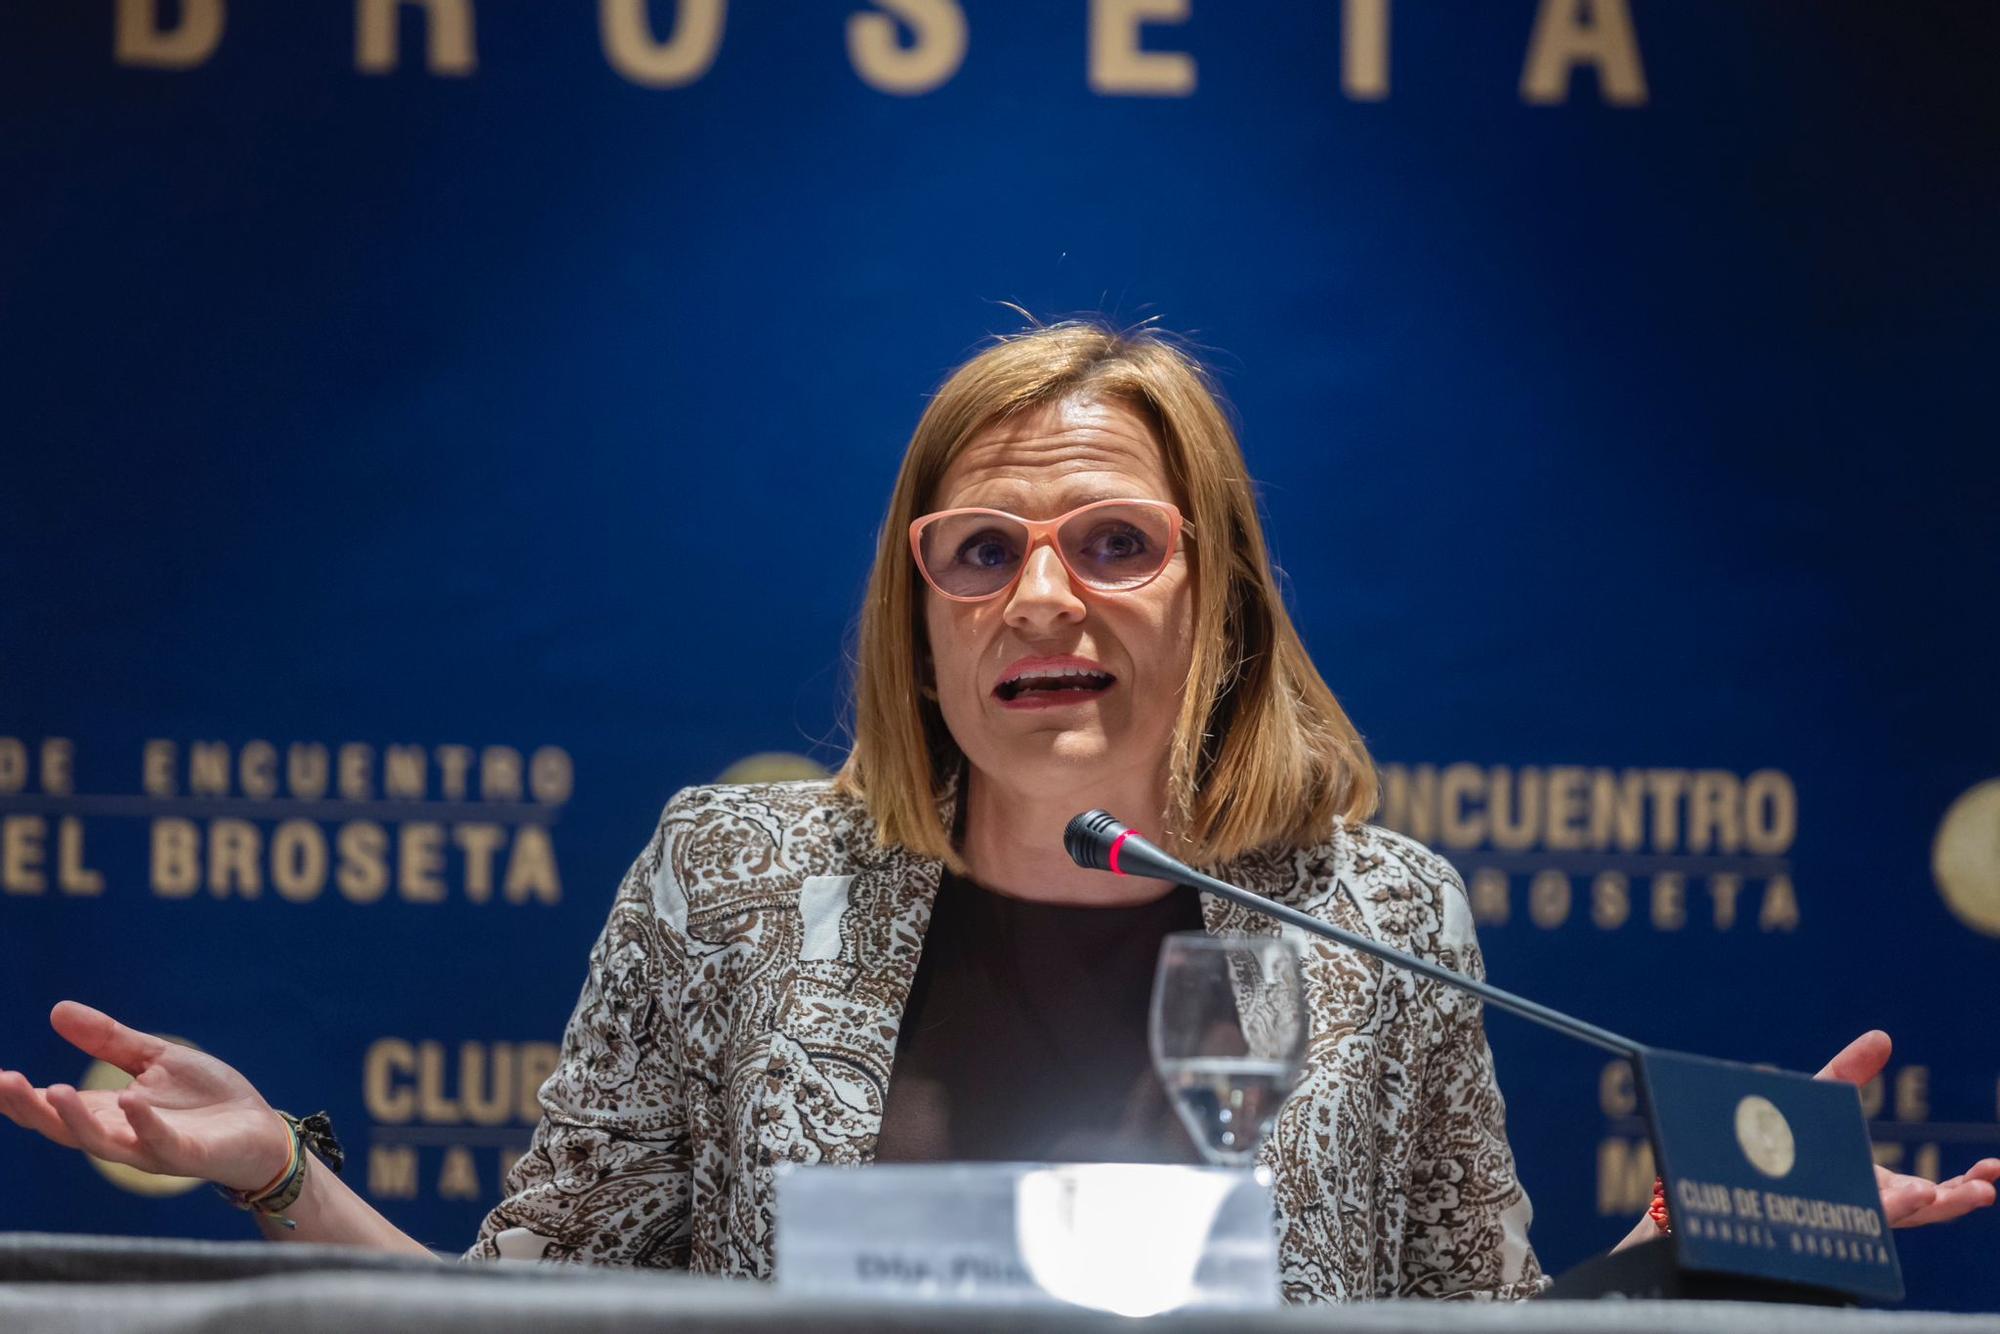 La intervención de Pilar Bernabé en el Club de Encuentro Manuel Broseta, en imágenes